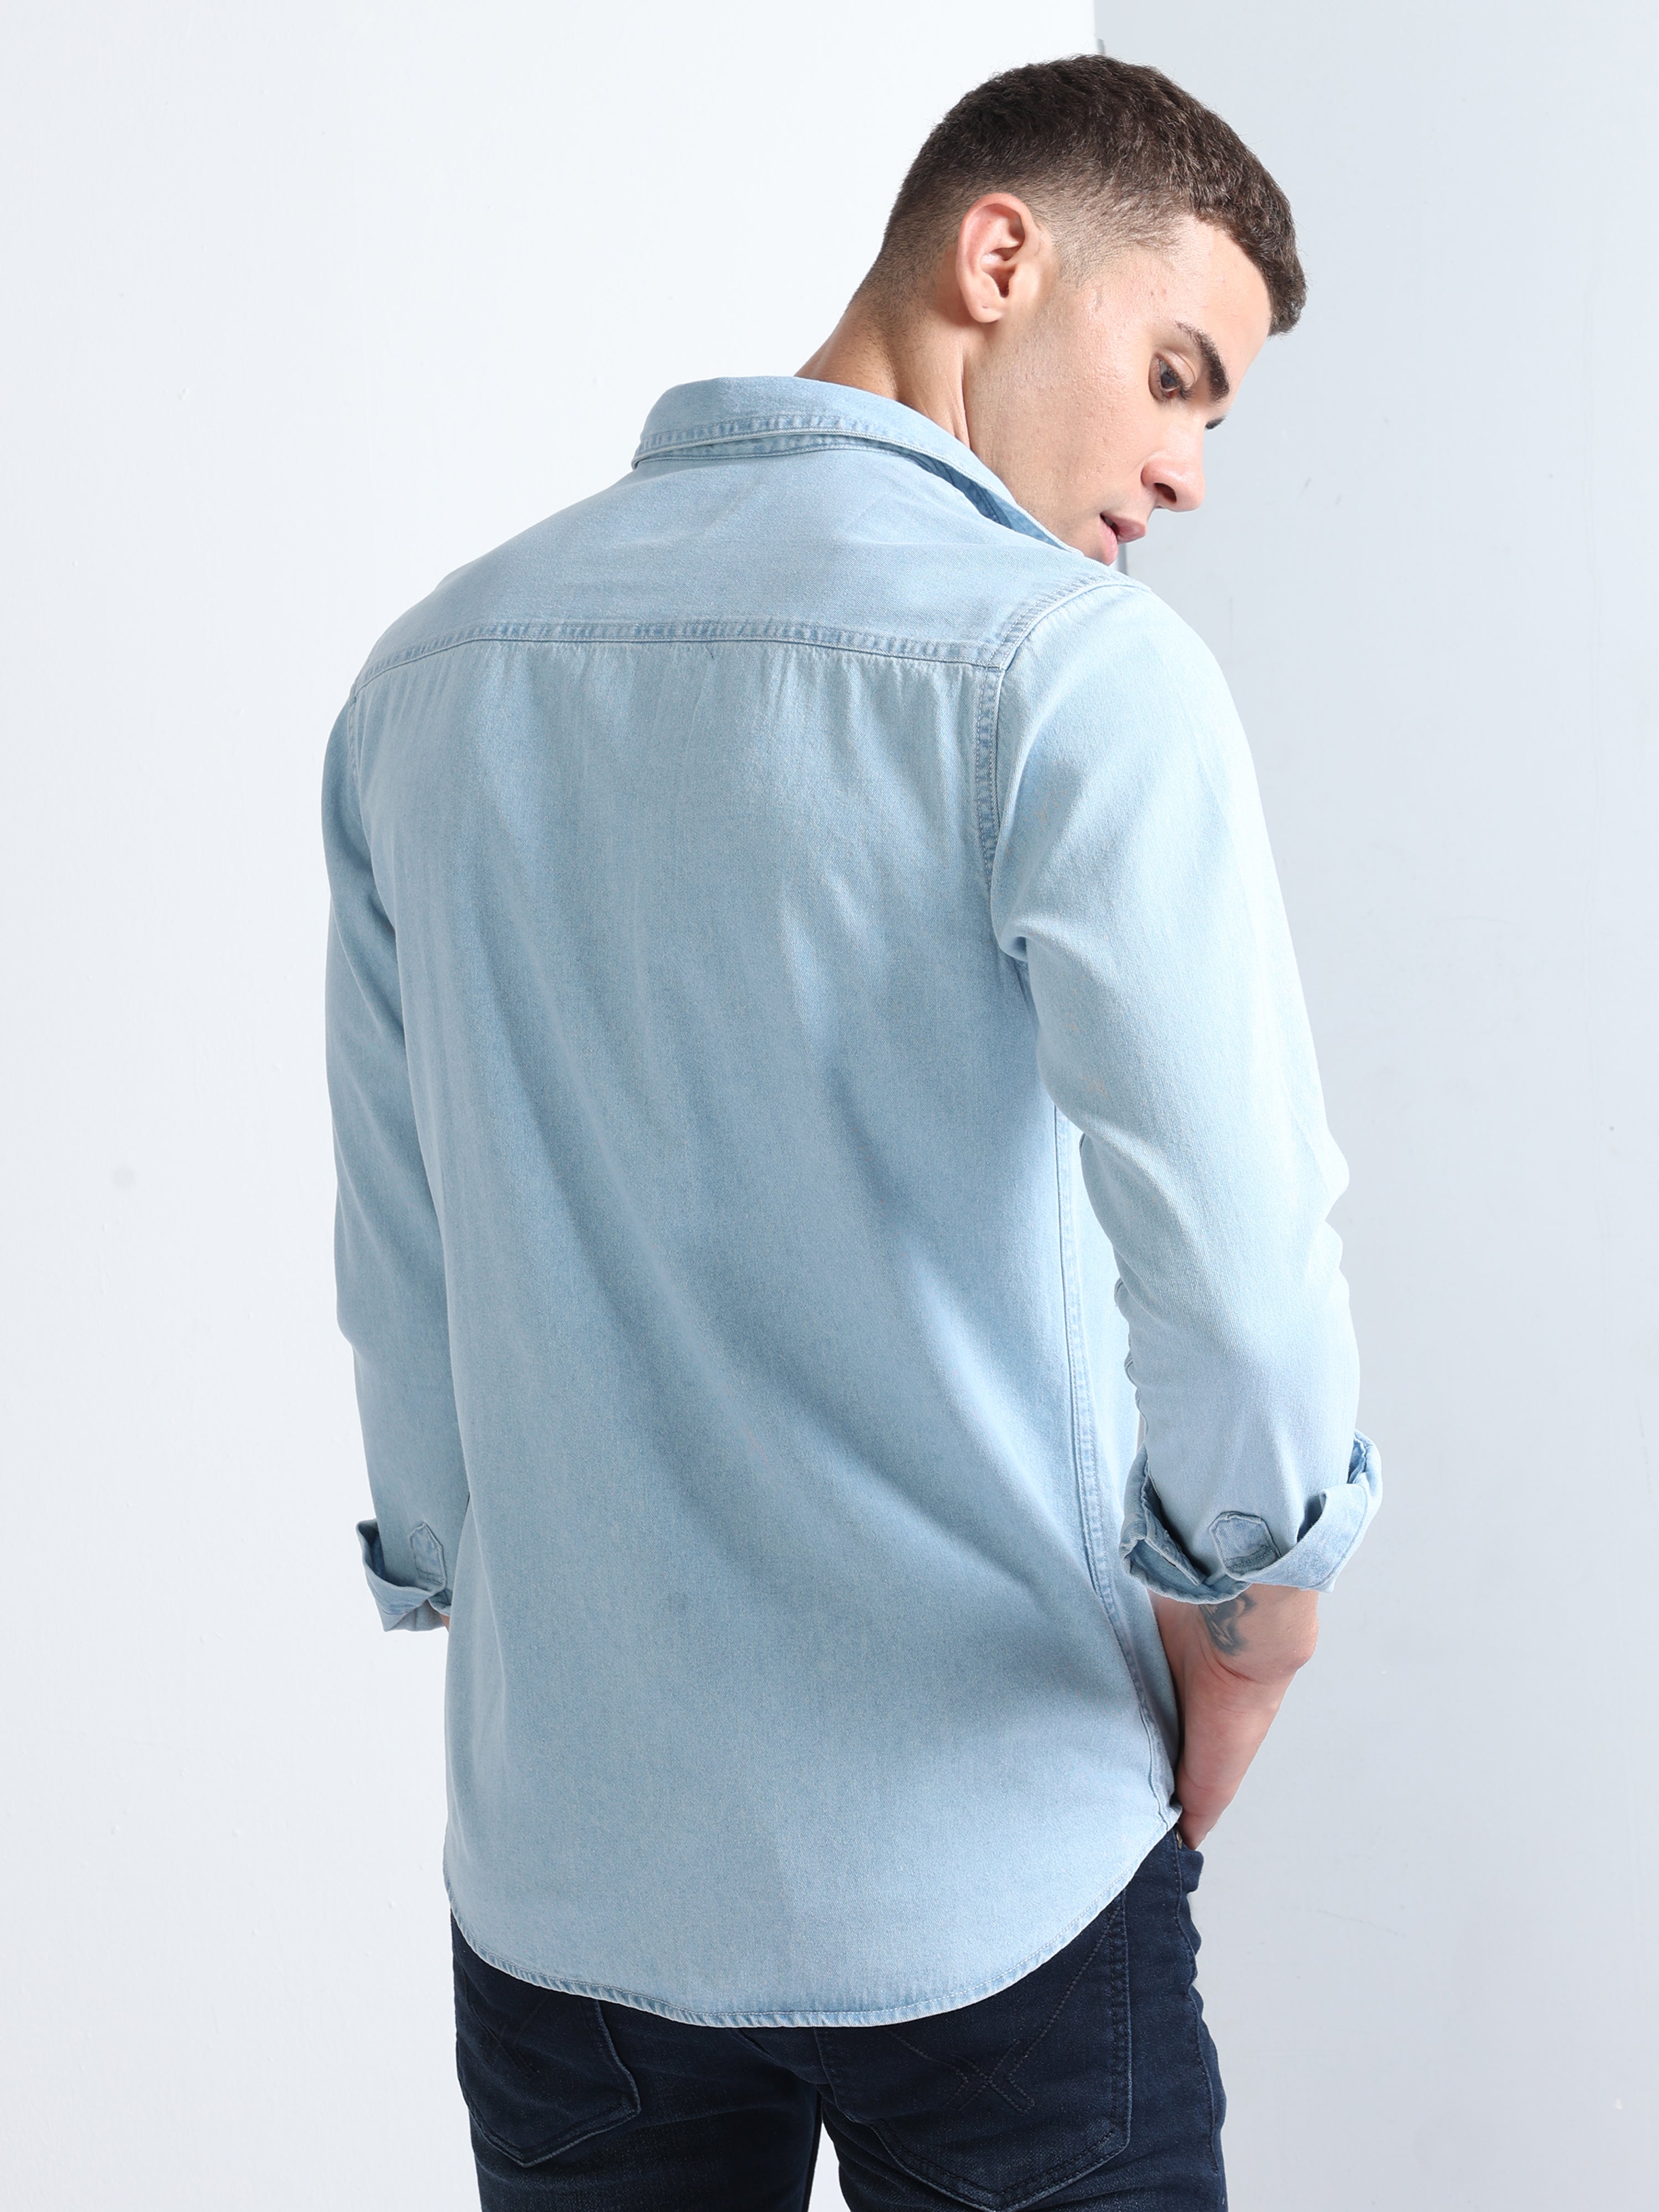 Buy Wrangler Men's Solid Blue Denim Shirt (Regular) | Wrangler® India  Official Online Store